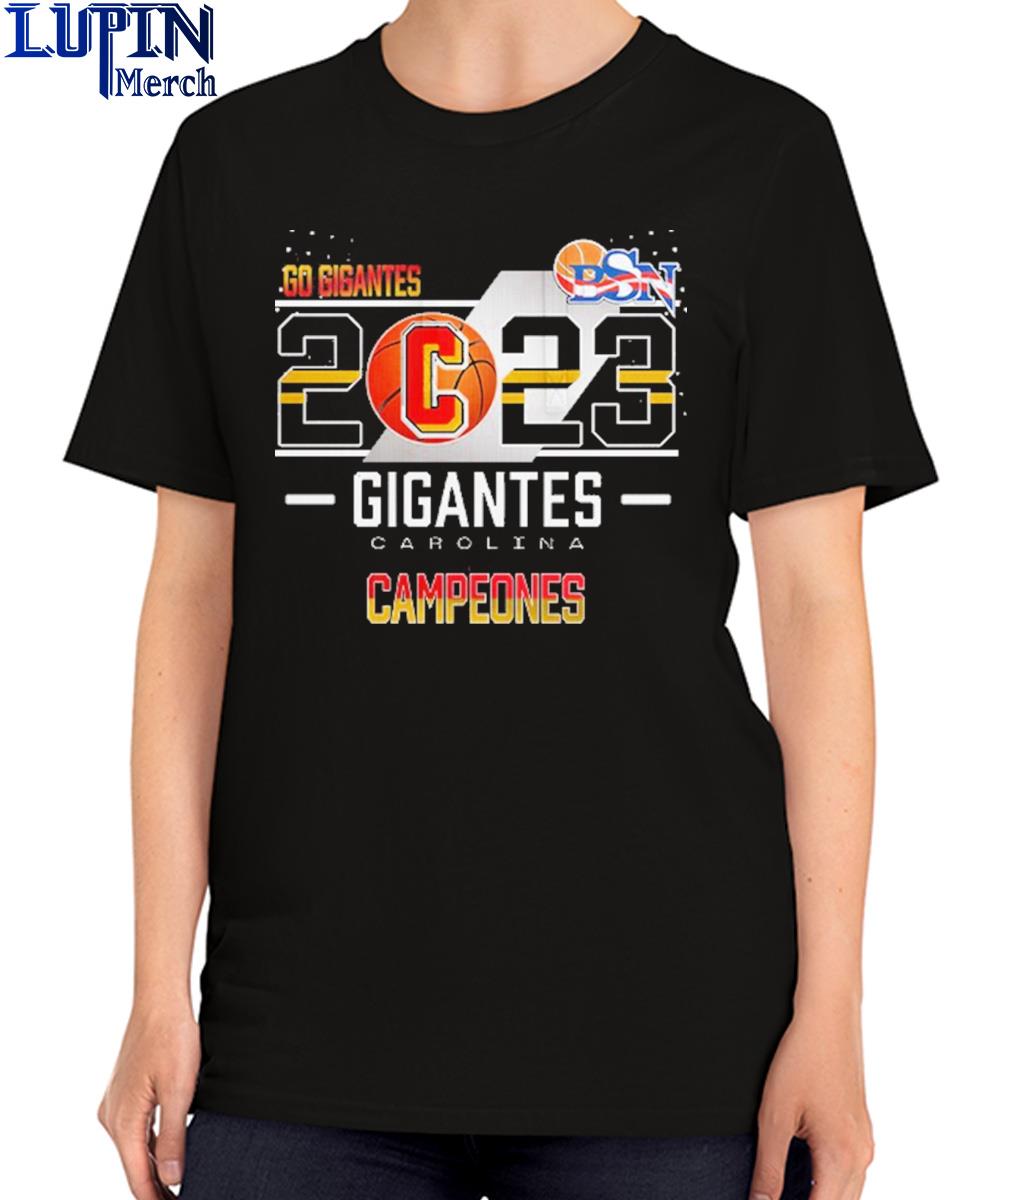 Official Campeones Gigantes De Carolina Bsn Baseball Jersey